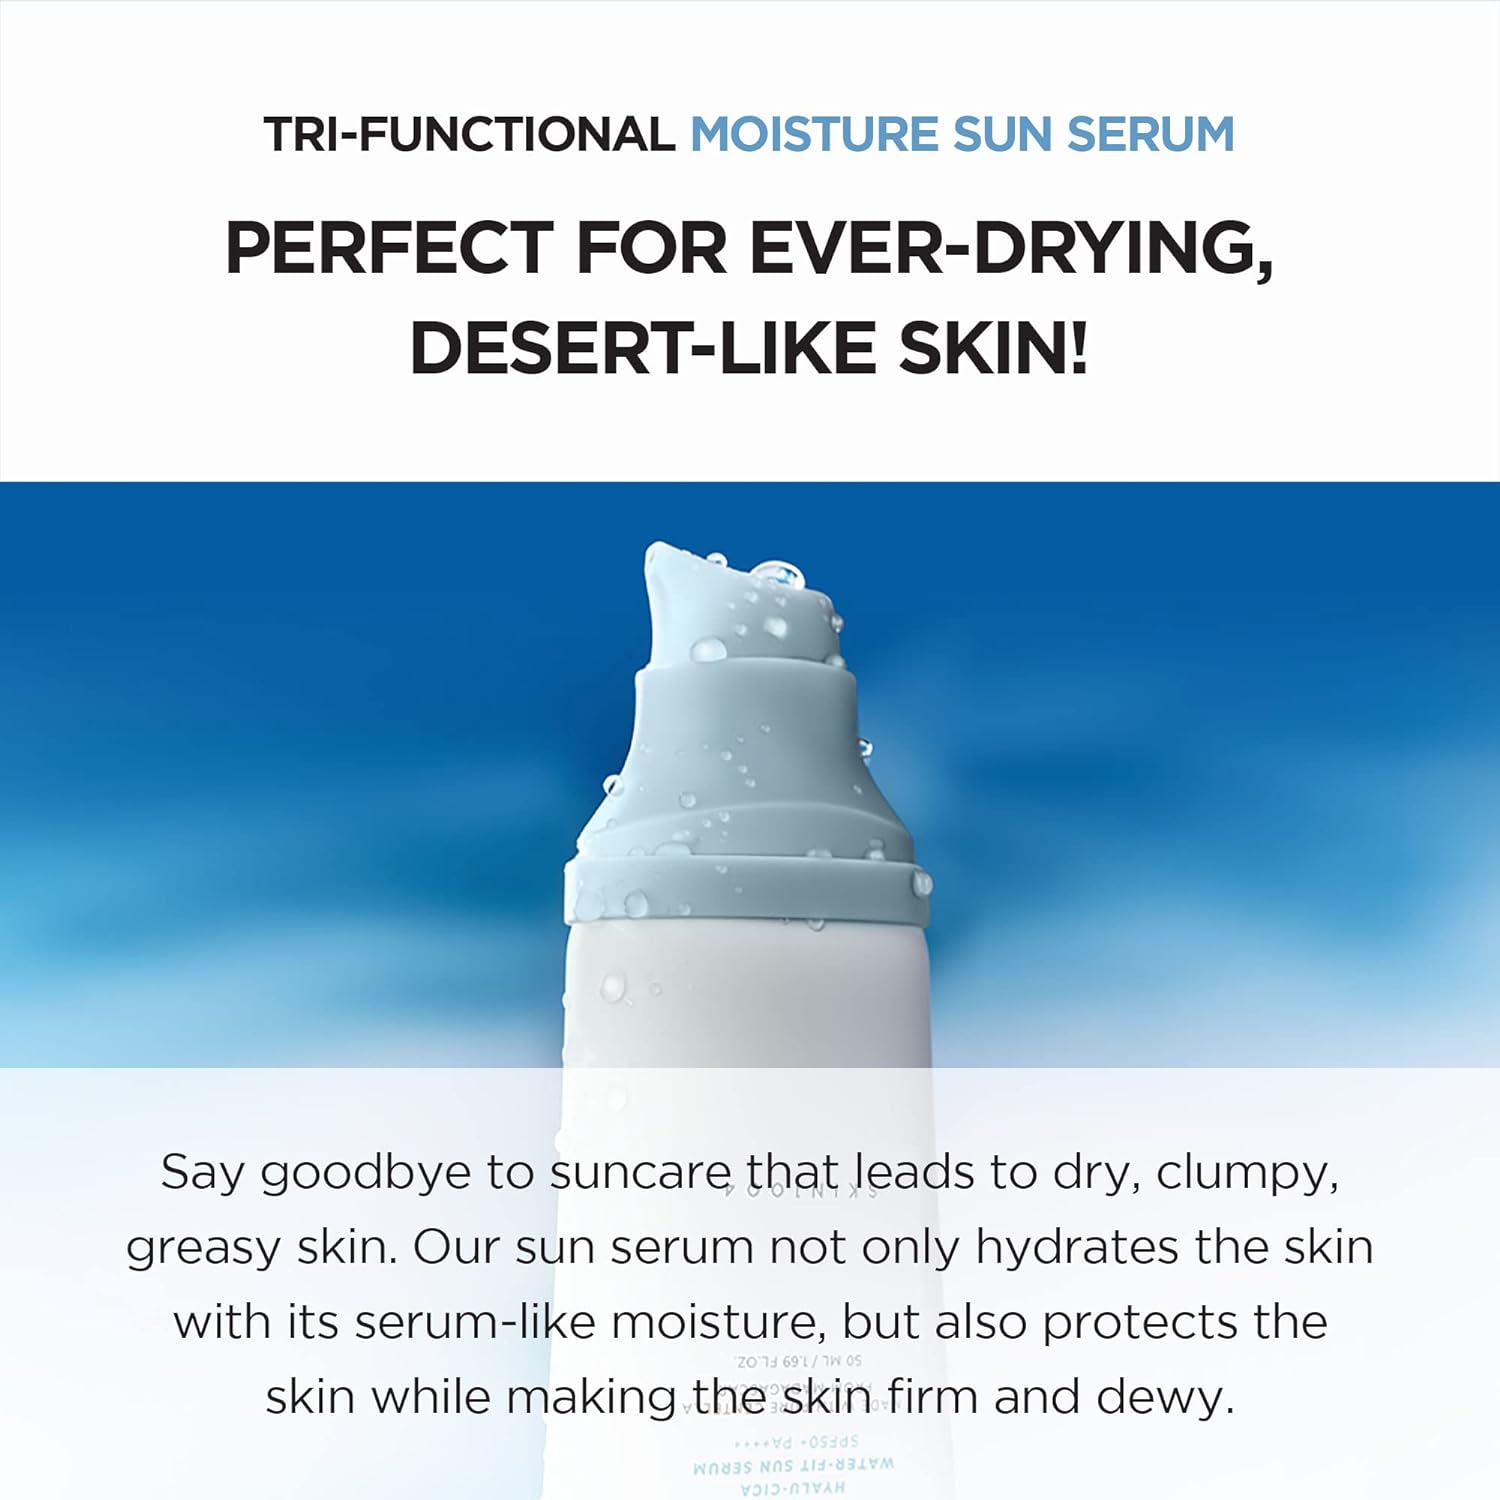 Skin 1004 Hyalu - Cica Water - Fit Sun Serum SPF50+ PA++++ - 50ML